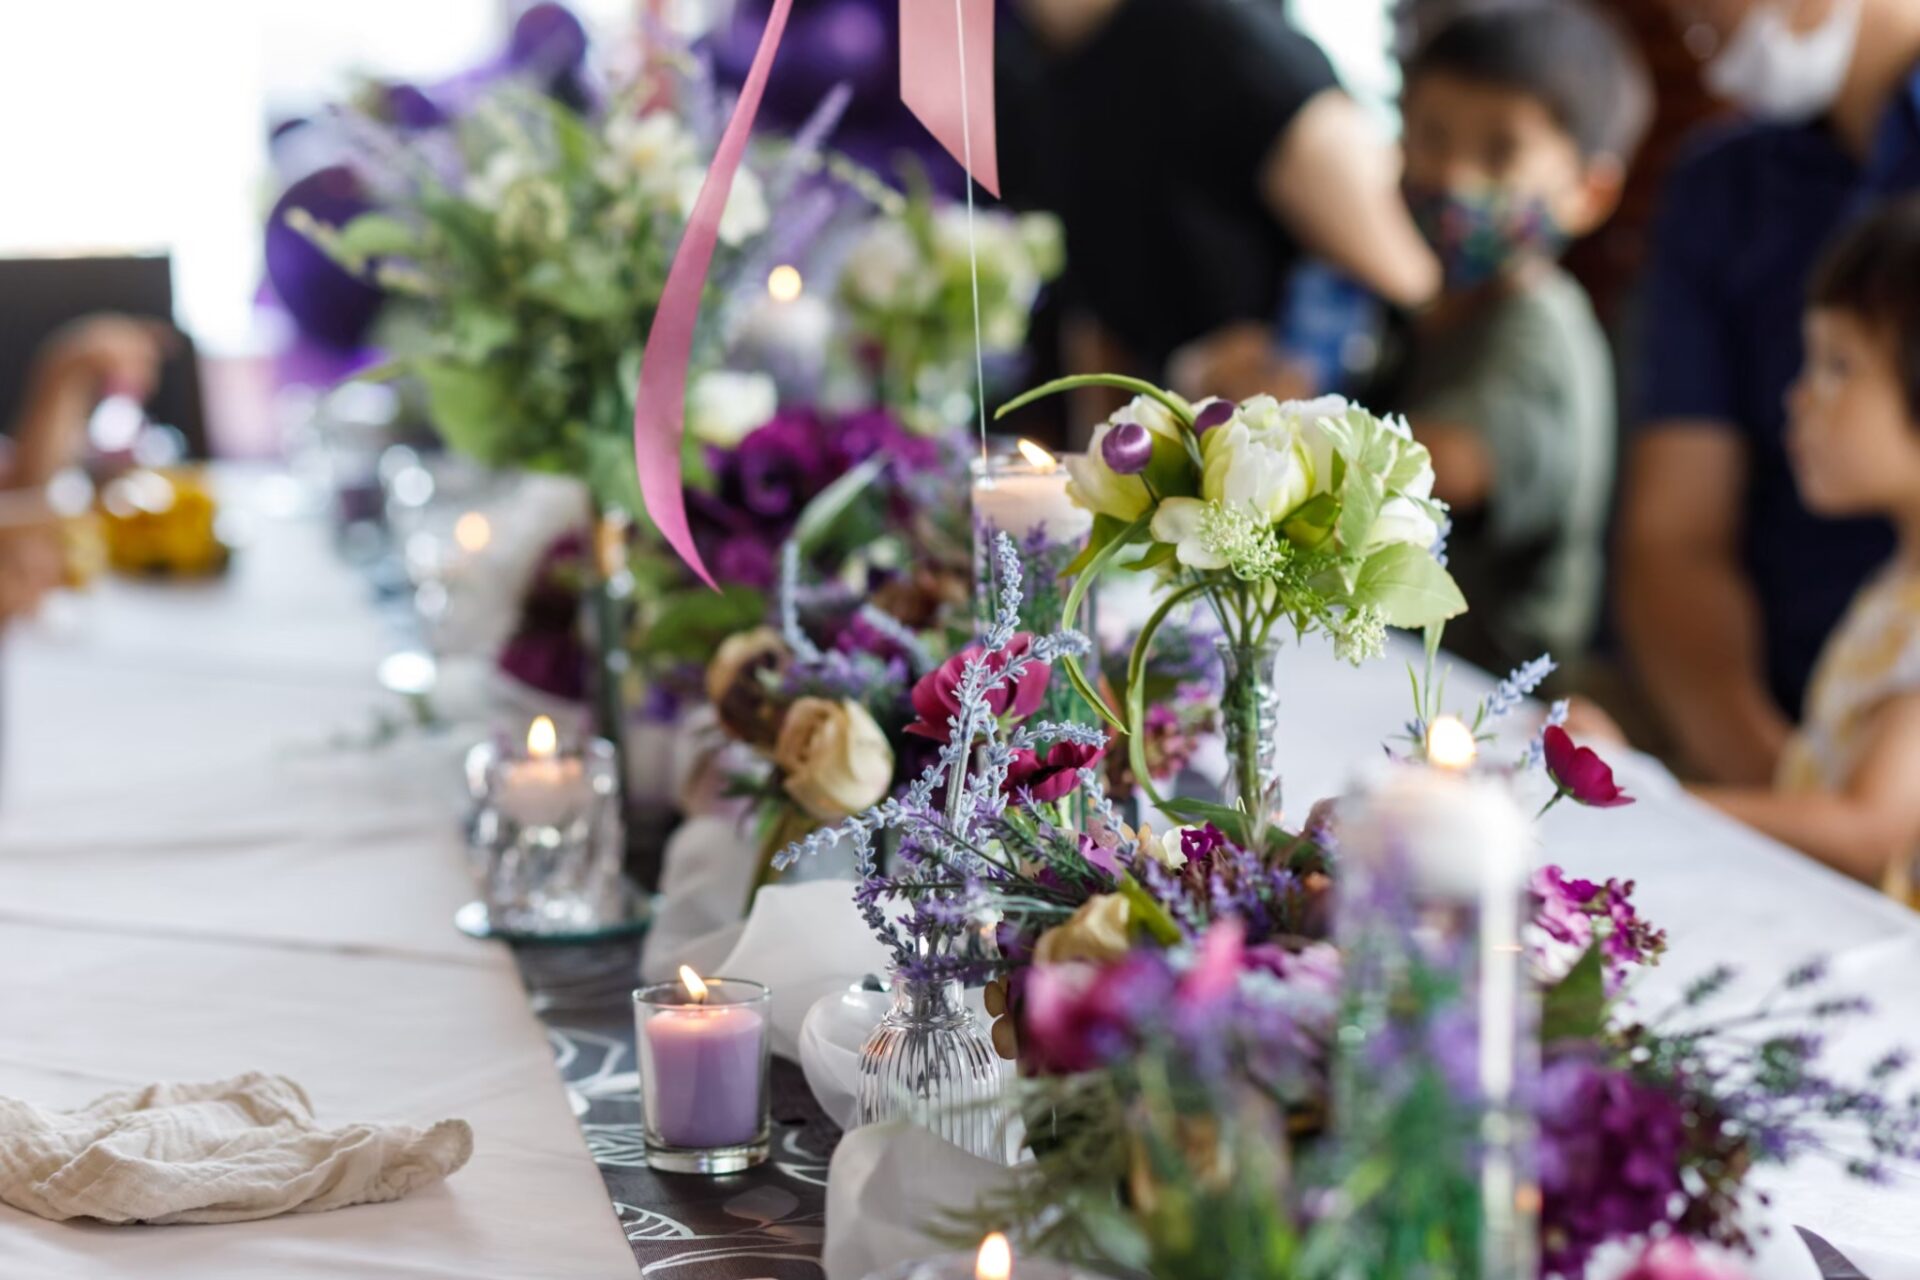 以紫色花朵為主要焦點的餐桌裝飾在Koki慶祝活動中